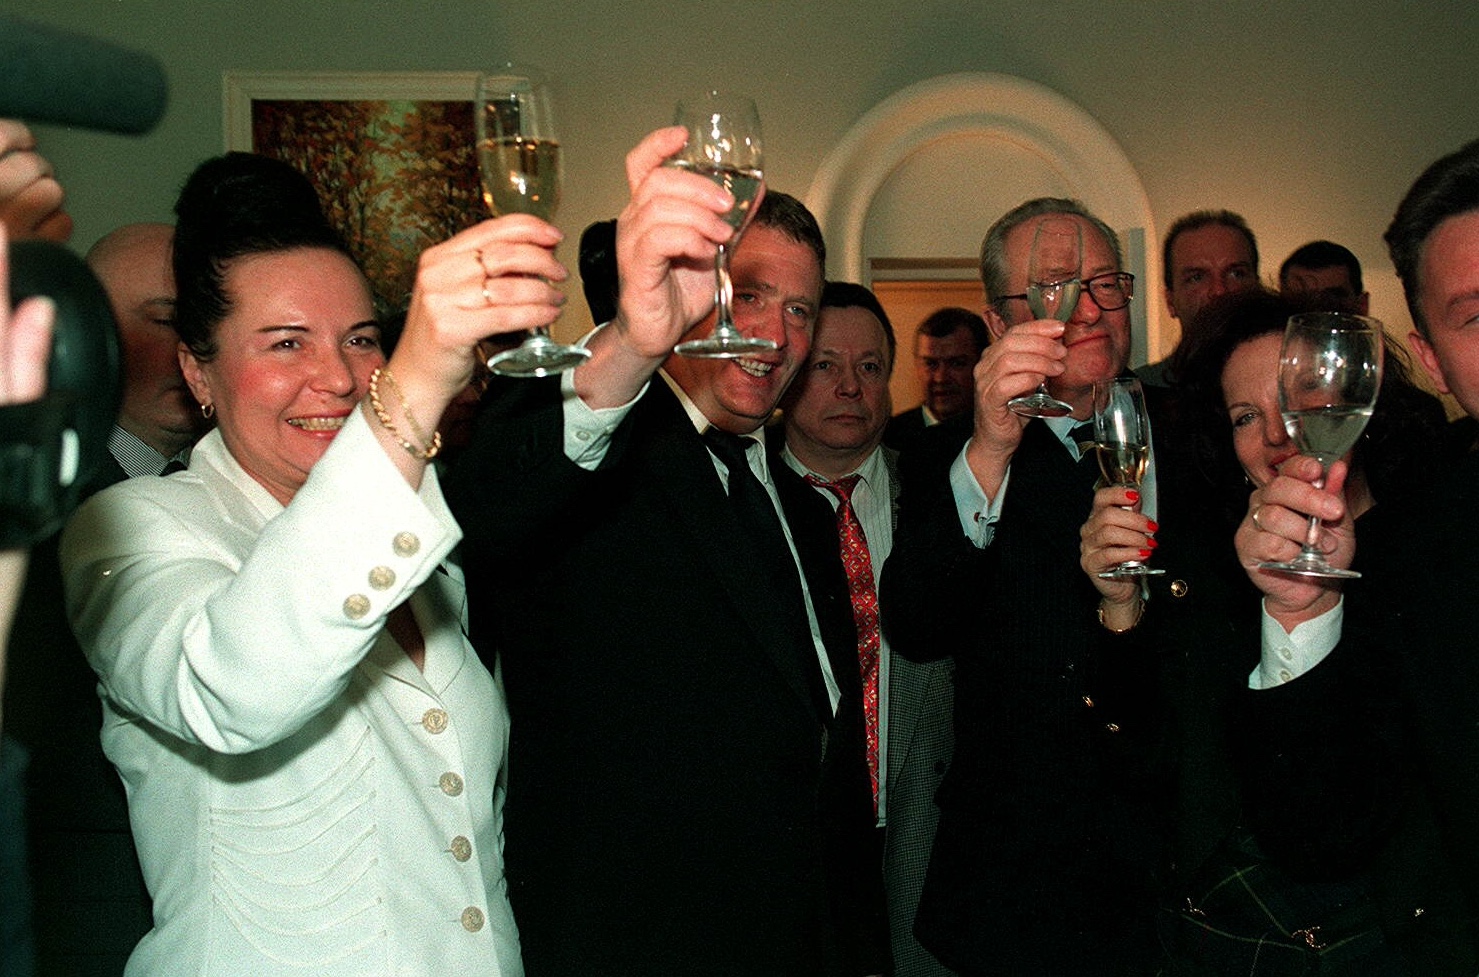 Moscú, 1996: el líder ultranacionalista ruso Vladimir Zhirinovsky celebra su aniversario de boda con Jean-Marie Le Pen y otros amigos. © Shone Nesic/SIPA